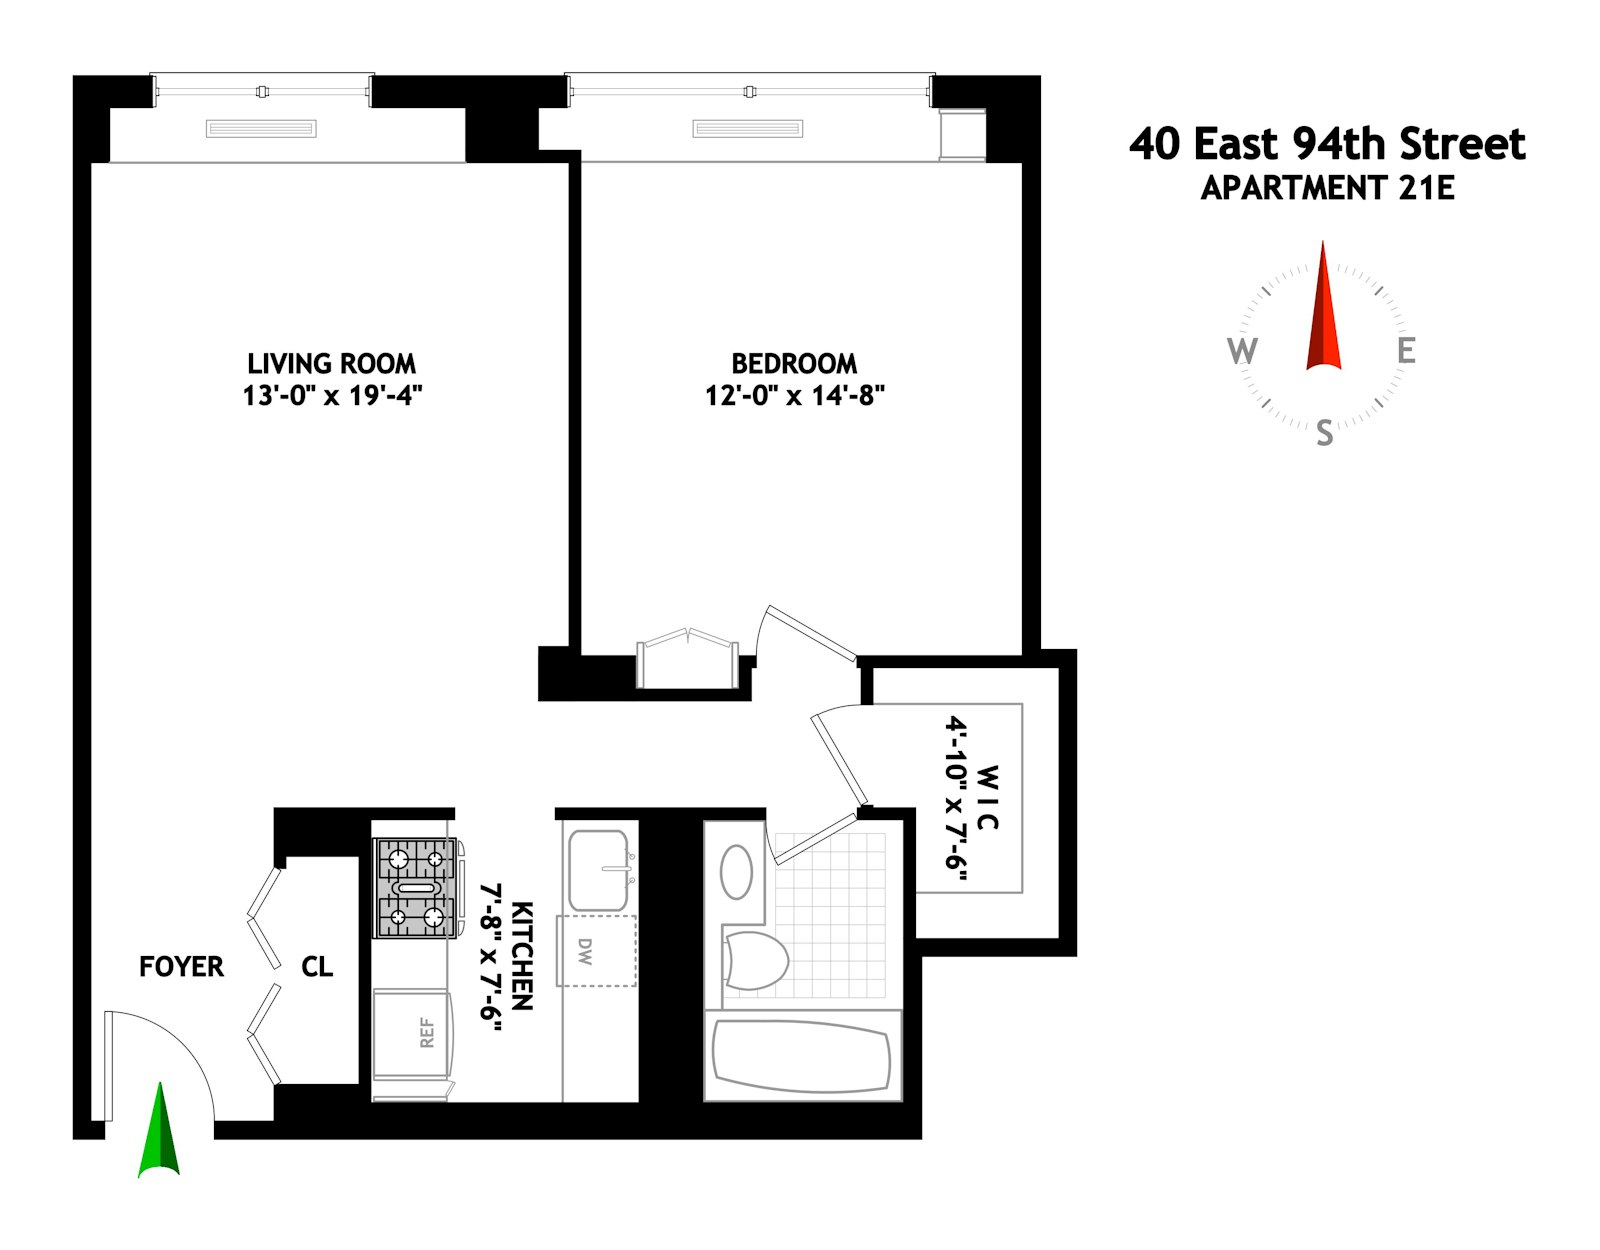 Floorplan for 40 East 94th Street, 21E